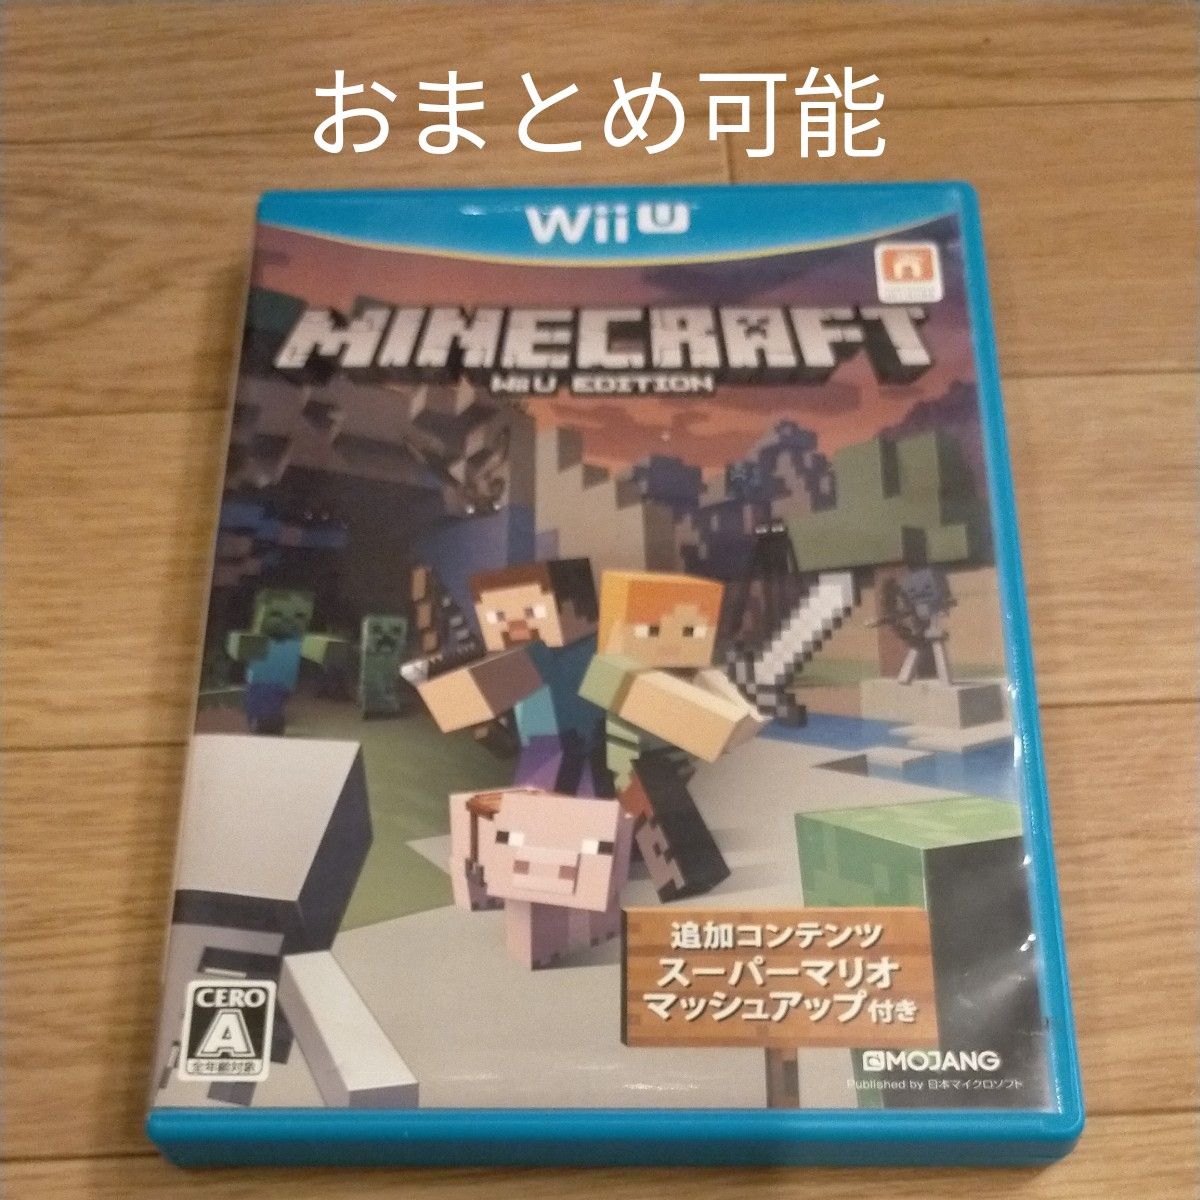 マインクラフト Wii U ソフト マイクラ